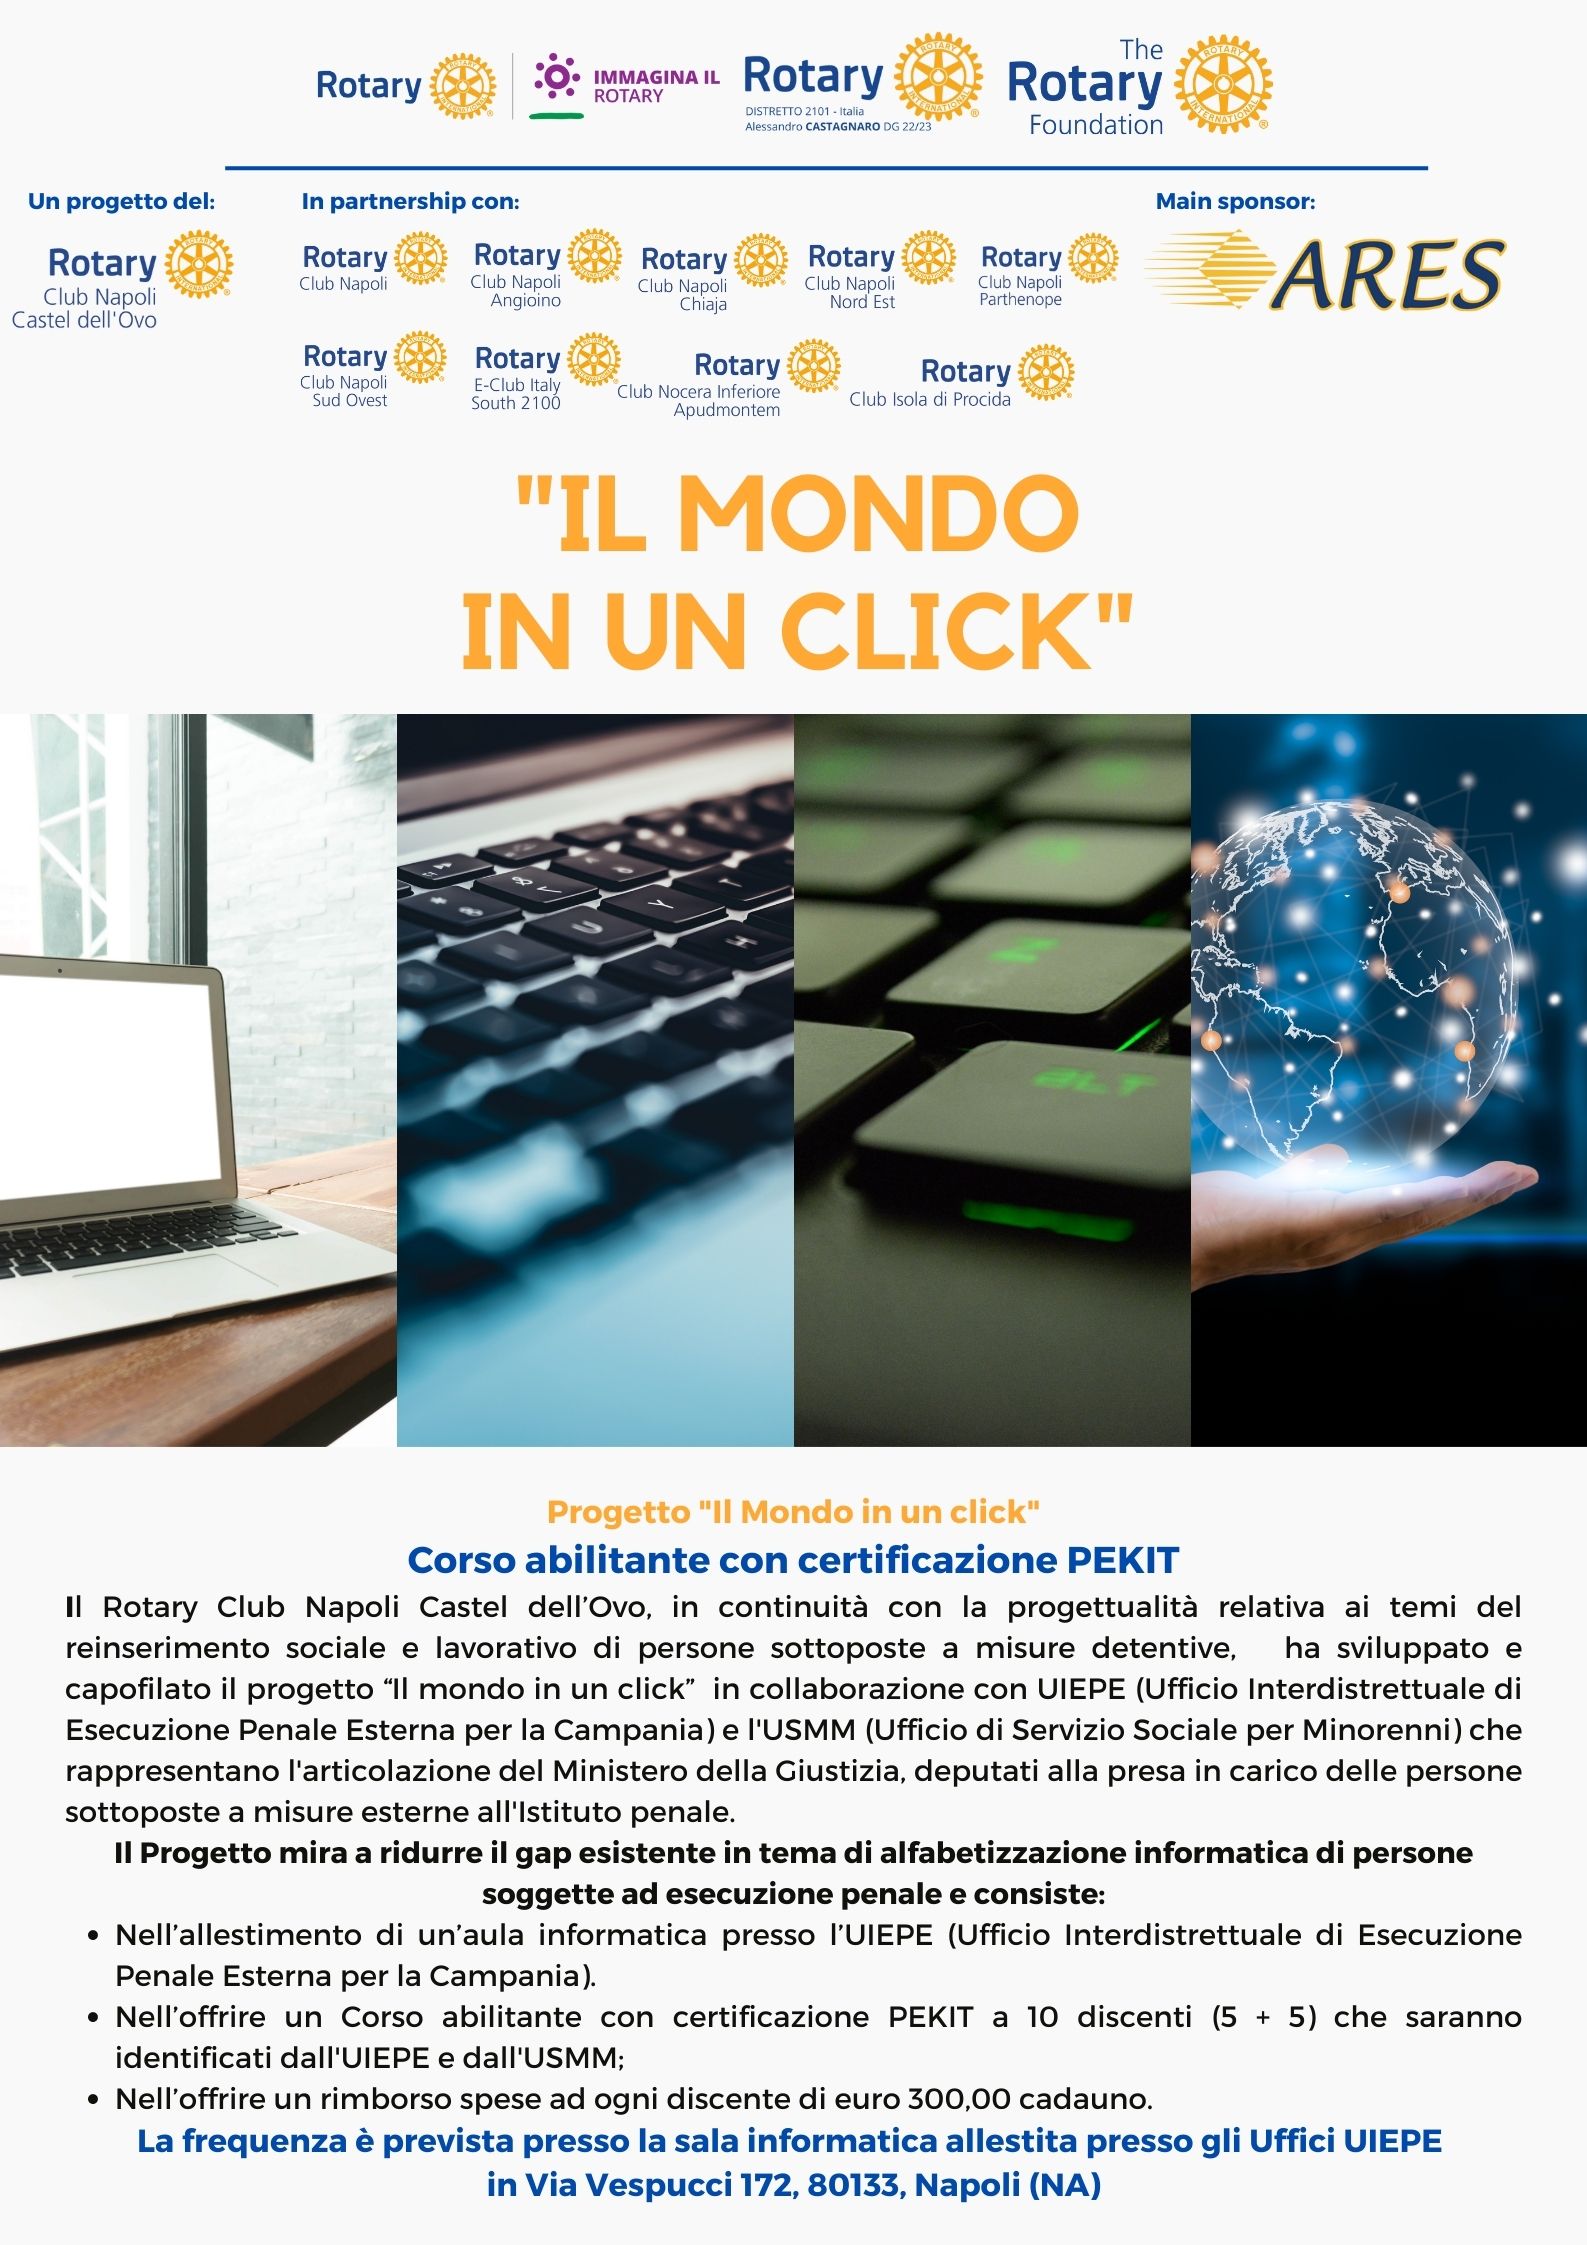 “Il Mondo in un Click” – lunedì 27 marzo presso l’UIEPE avvio del corso finanziato dal Rotary Club Napoli Castel dell’Ovo